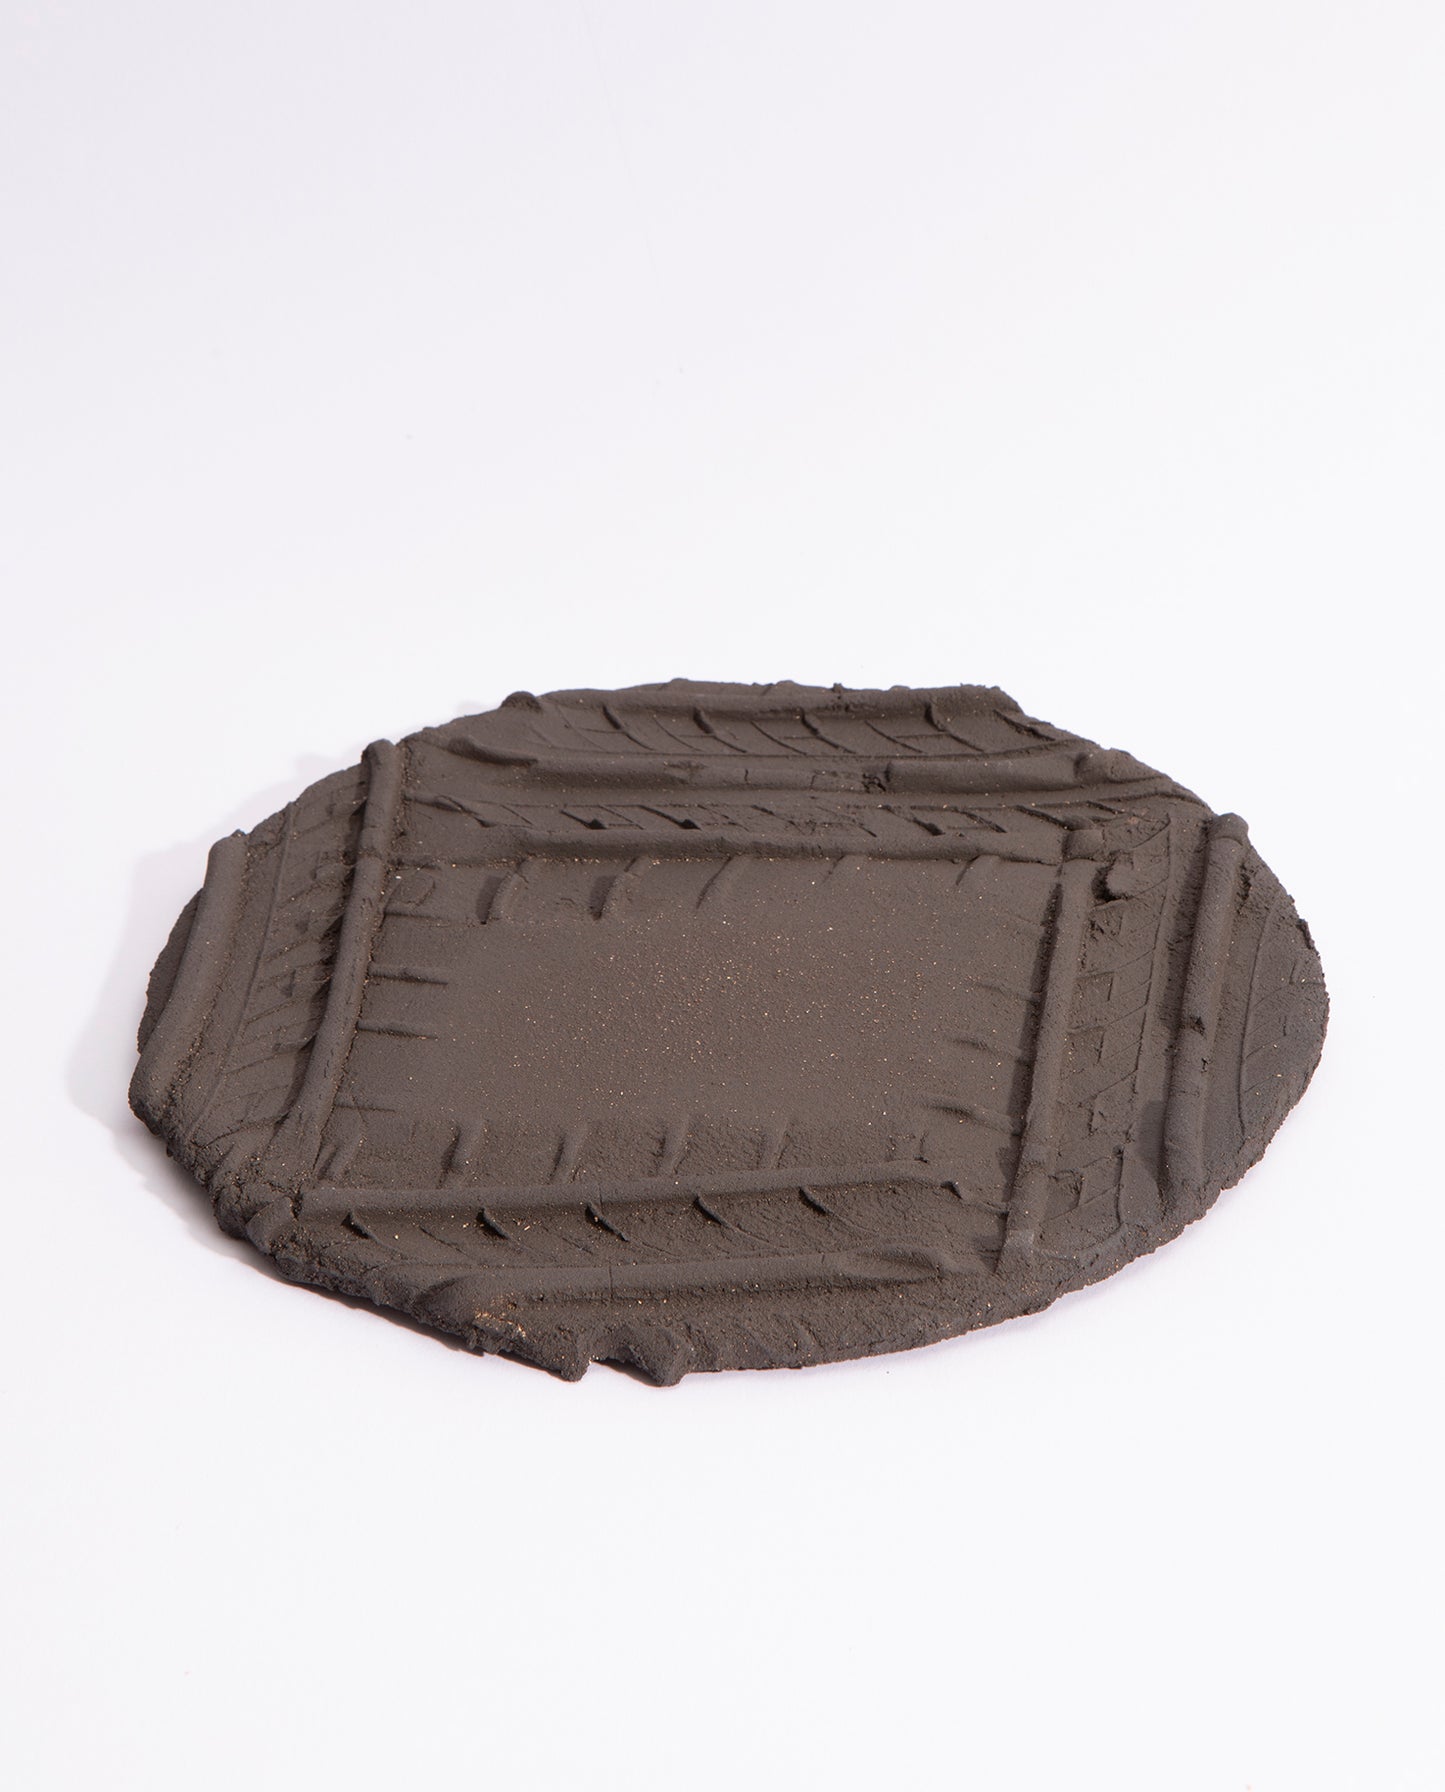 Assiette en grès noir brut, avec quatre empreintes de pneu qui forme un carré sur l'assiette.